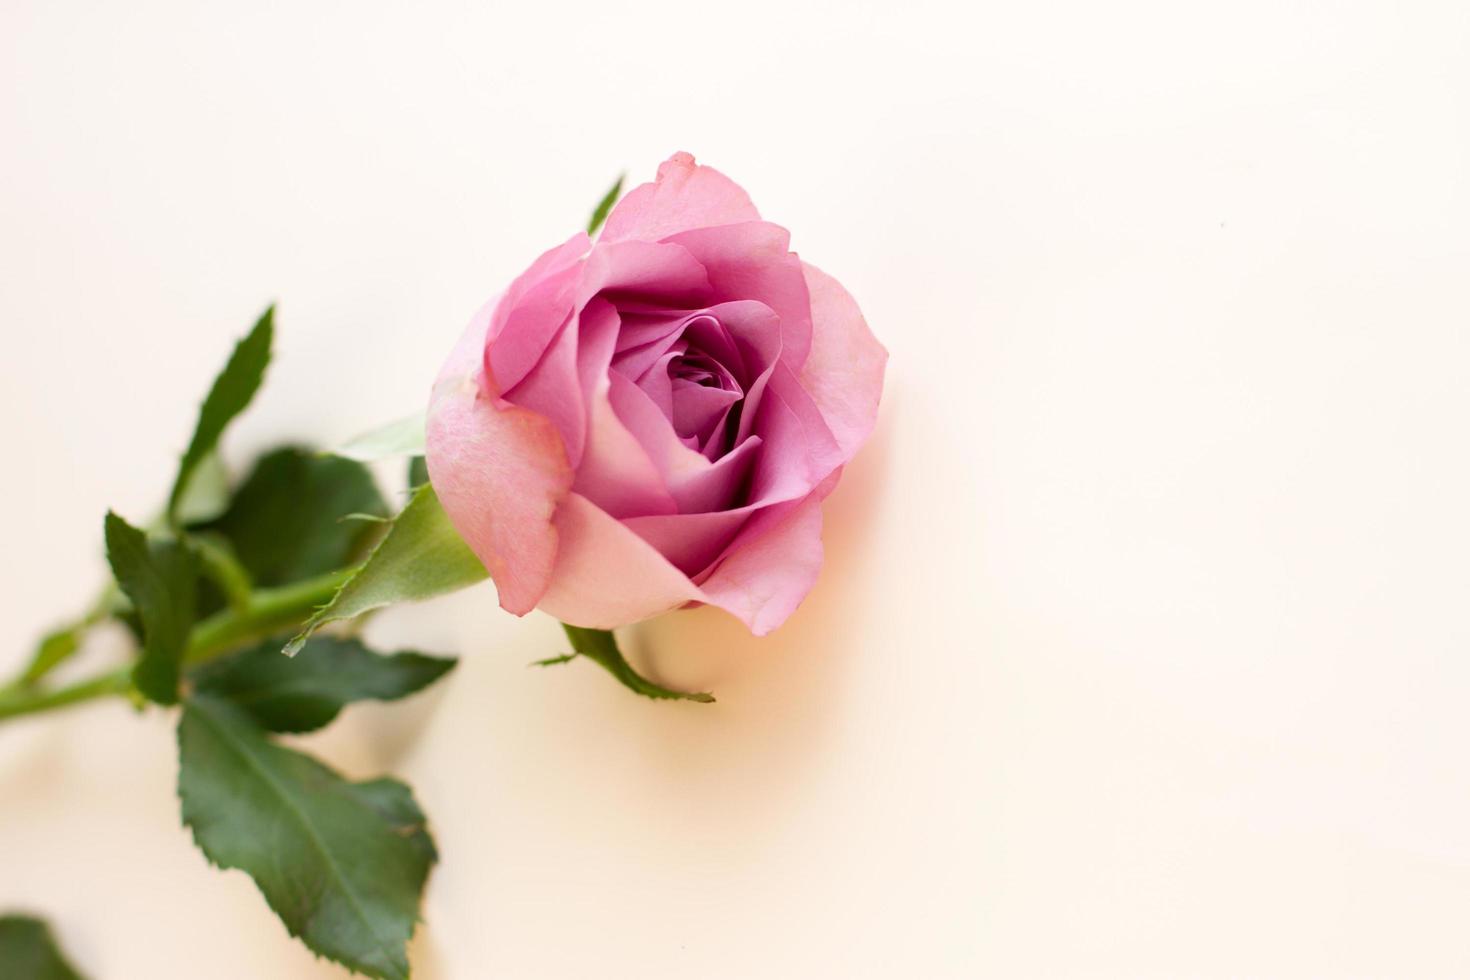 Único píon lilás em forma de rosa em fundo claro foto